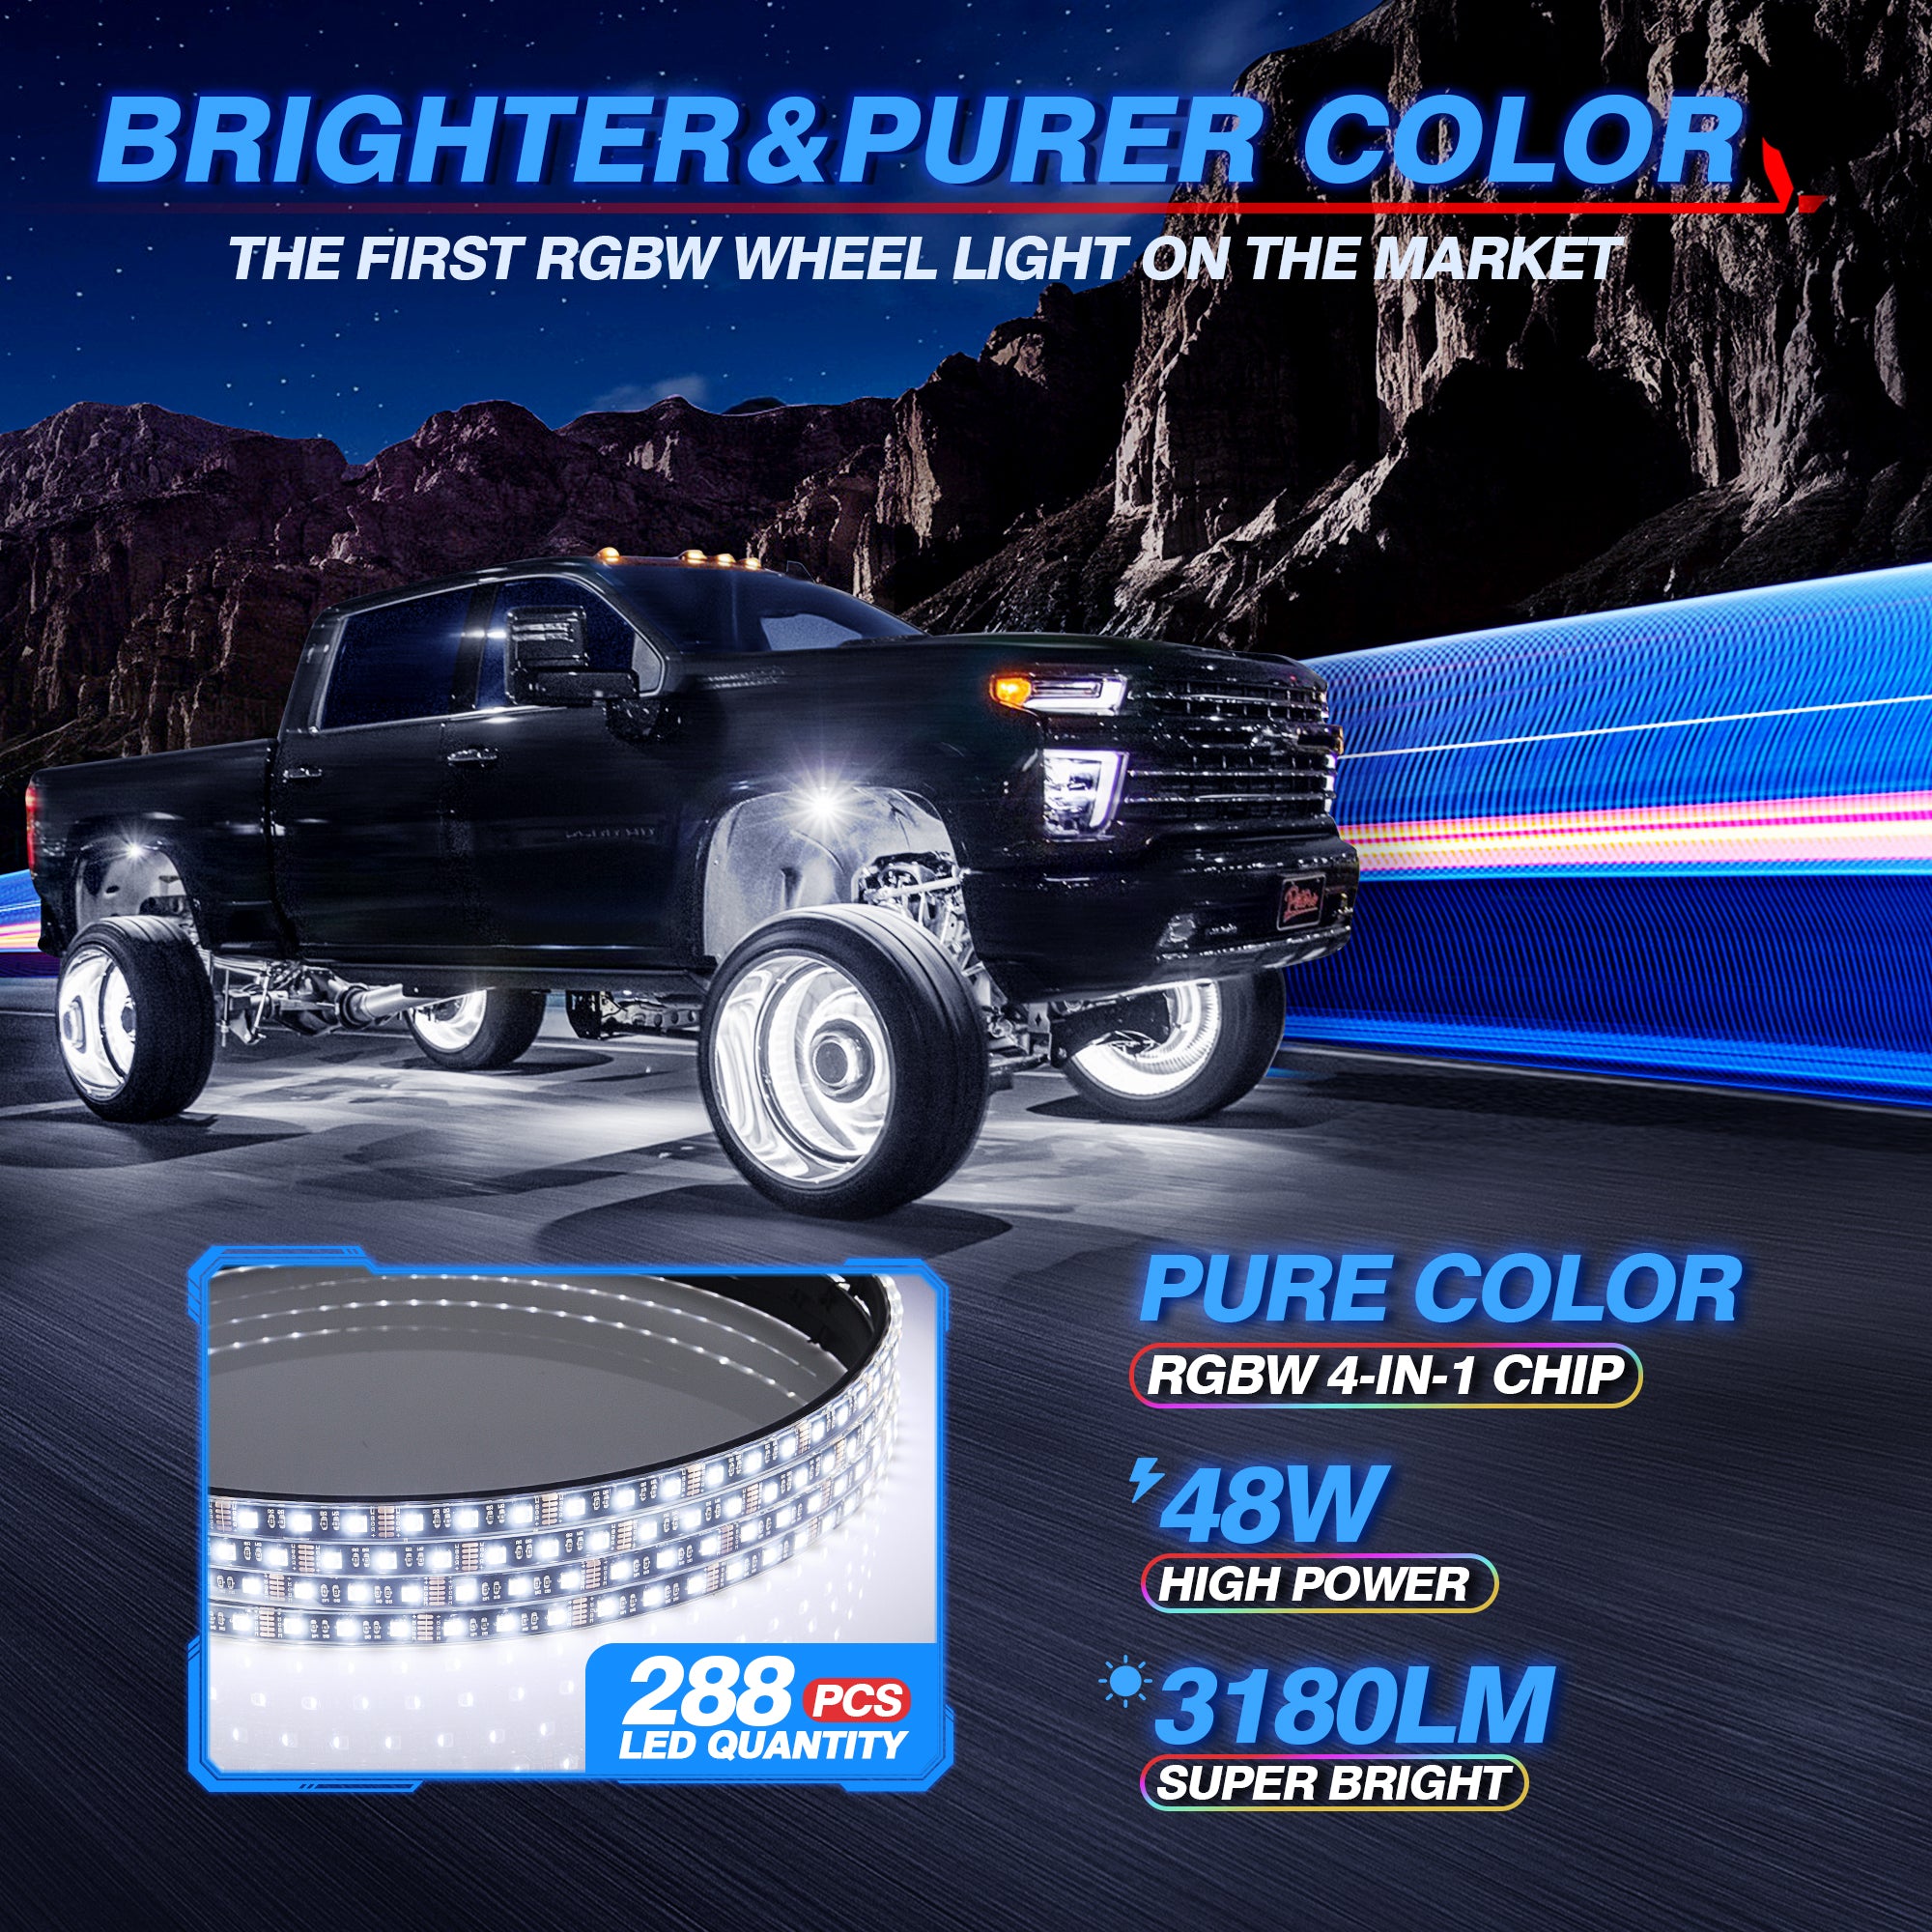 15.5'' RGBW LED Wheel Ring Lights 4pcs Neon Wheel Rim Lights w/Turn Signal & Braking Function